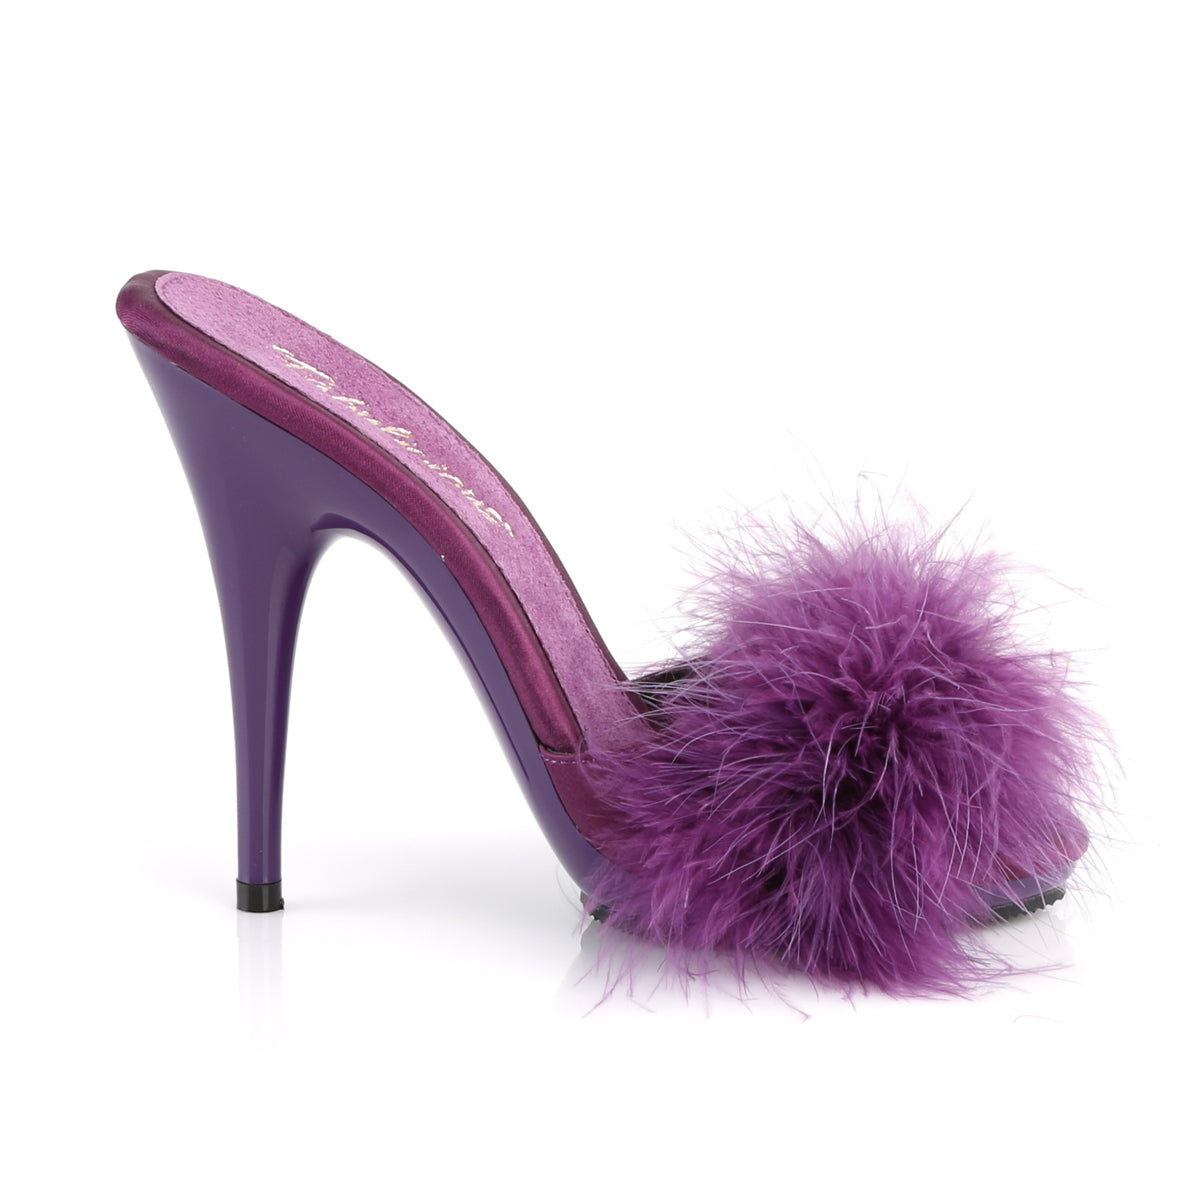 Fabulicious Sandales pour femmes POISE-501f violet satin-marabou fourrure / violet